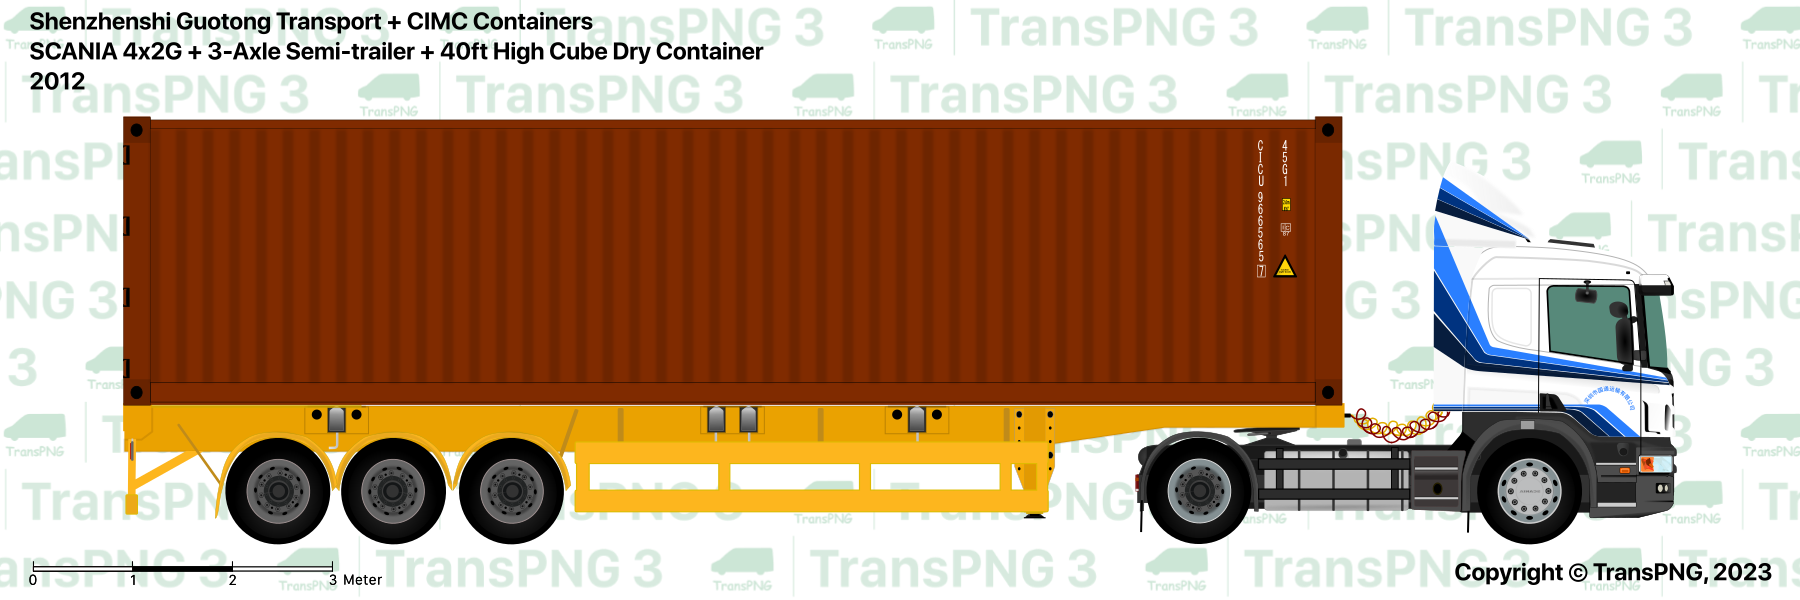 TransPNG.net | 分享世界各地多種交通工具的優秀繪圖 - 貨車 53324589130_8809efbdfd_o